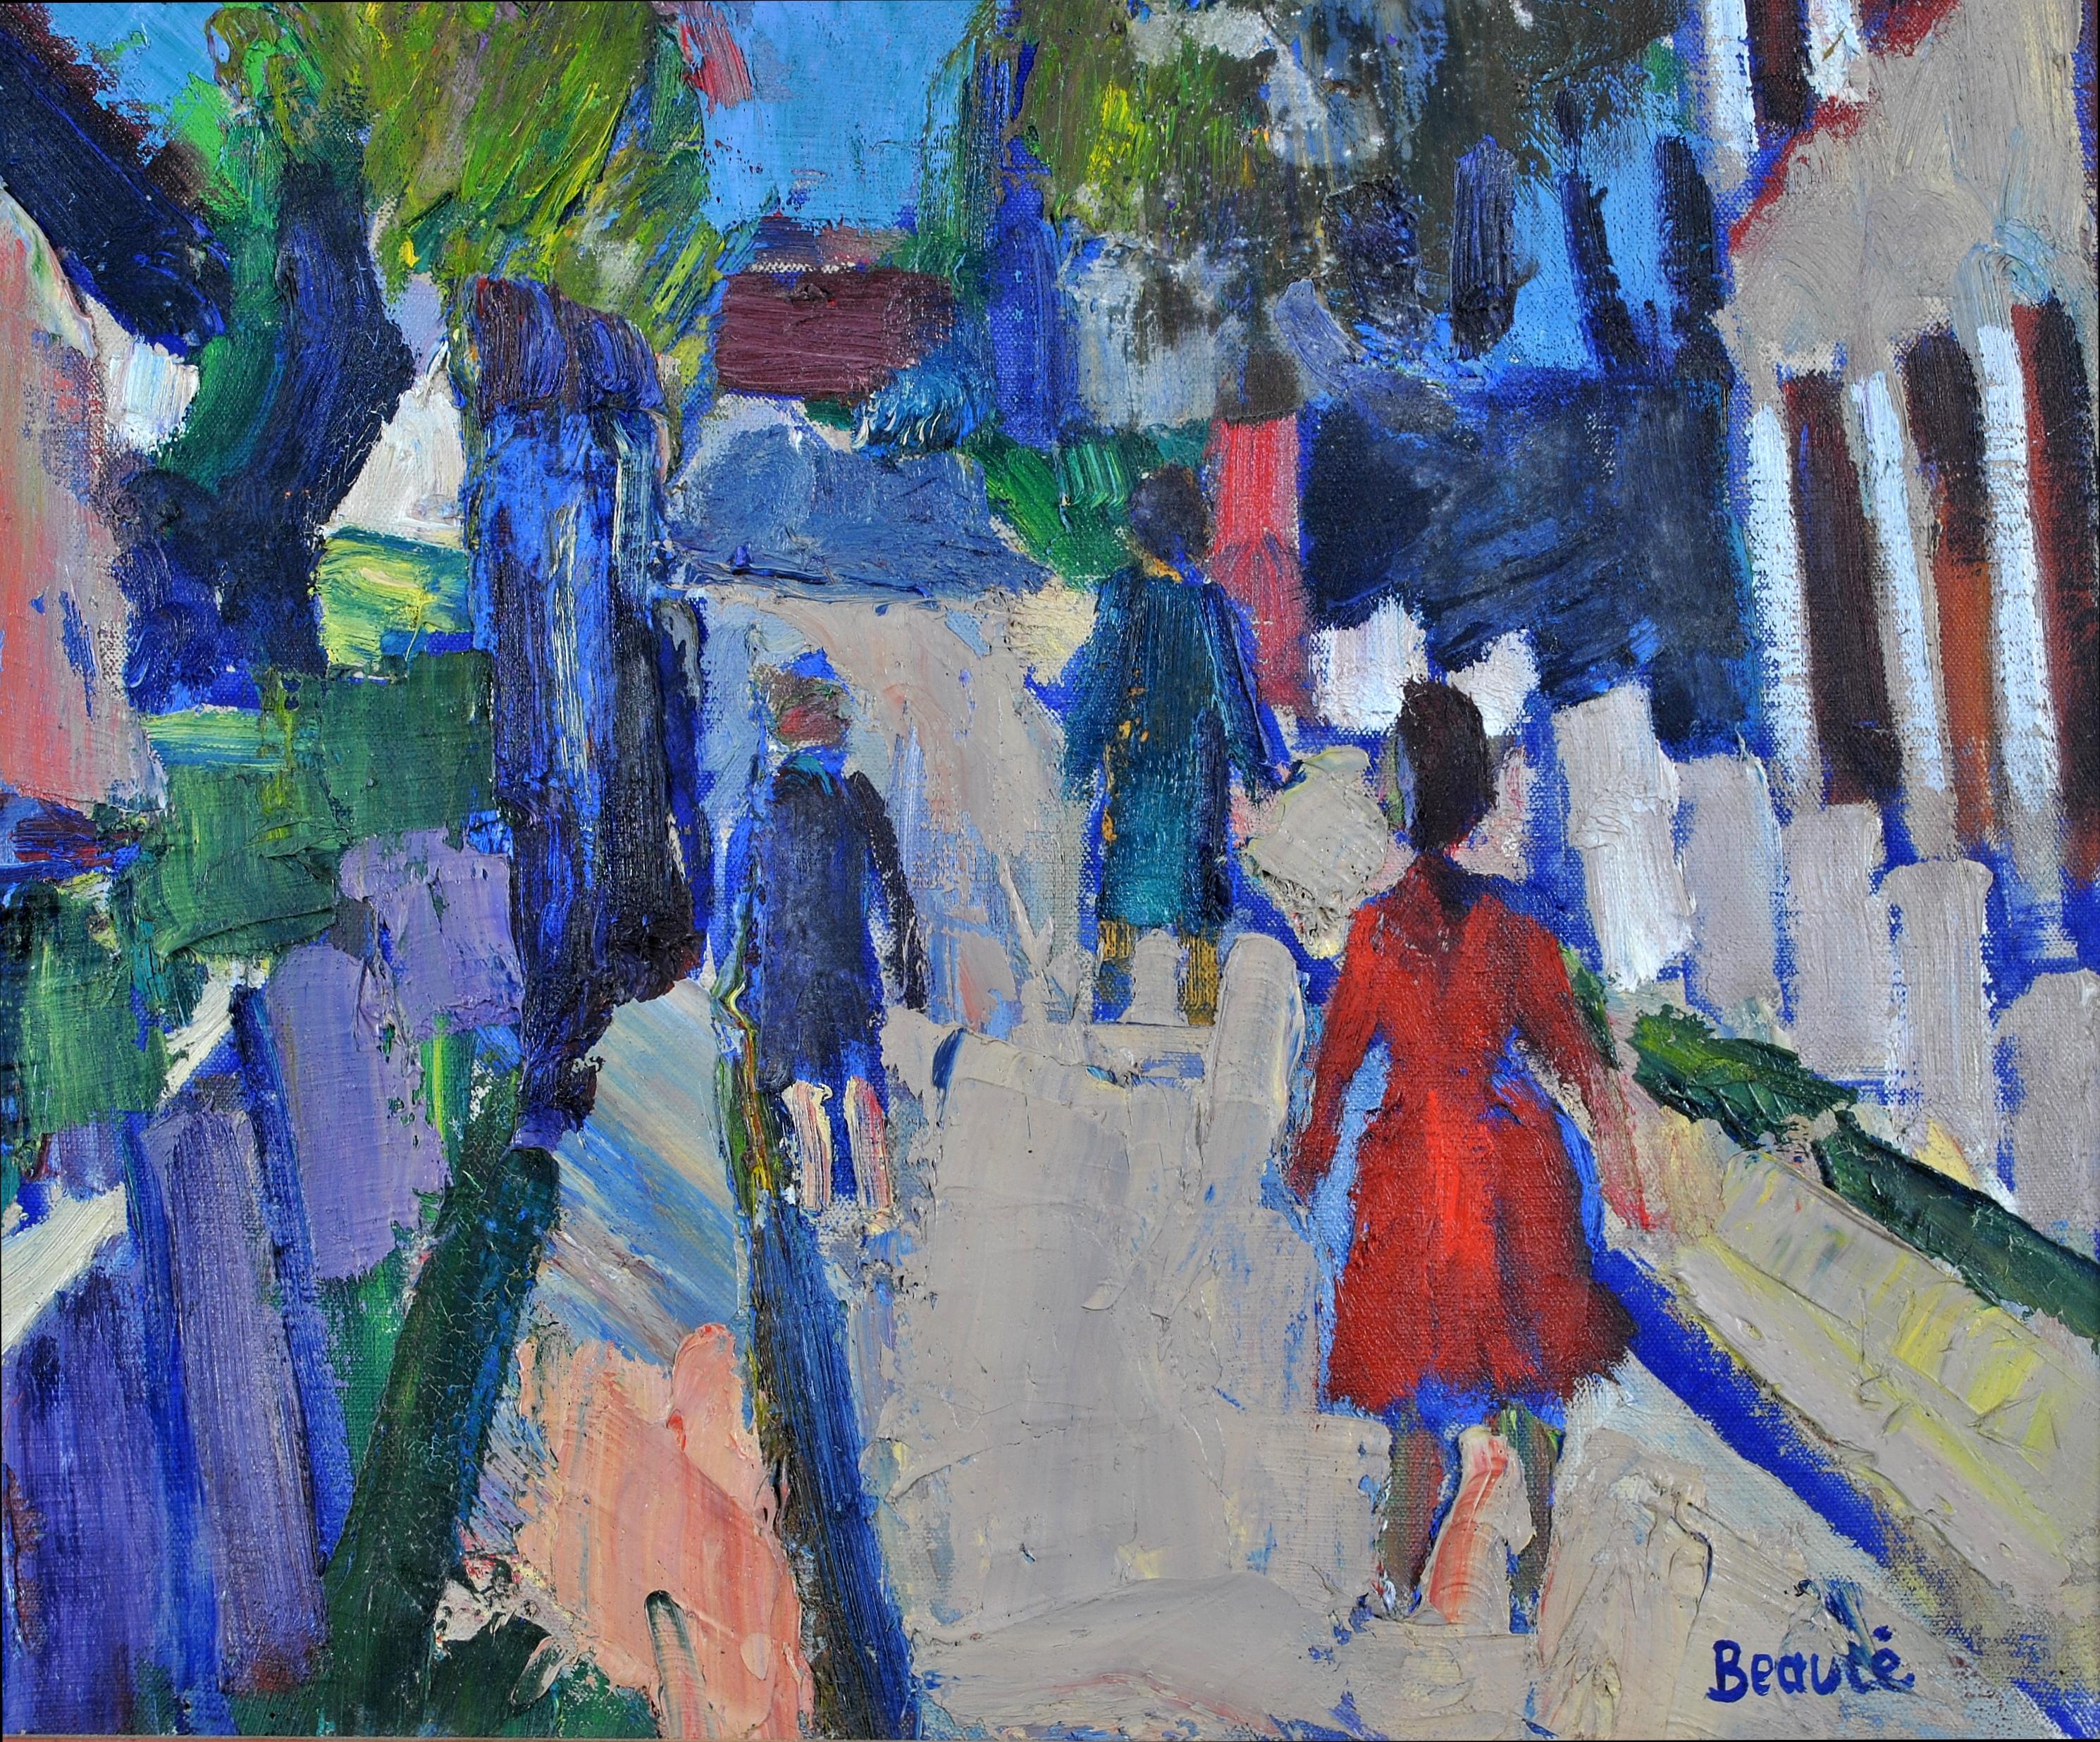 Magnifique grande huile sur toile expressionniste française des années 1950 représentant des habitants se promenant l'après-midi, par le peintre parisien André Beaucé. Travail d'excellente qualité et en très bon état. Signé en bas à